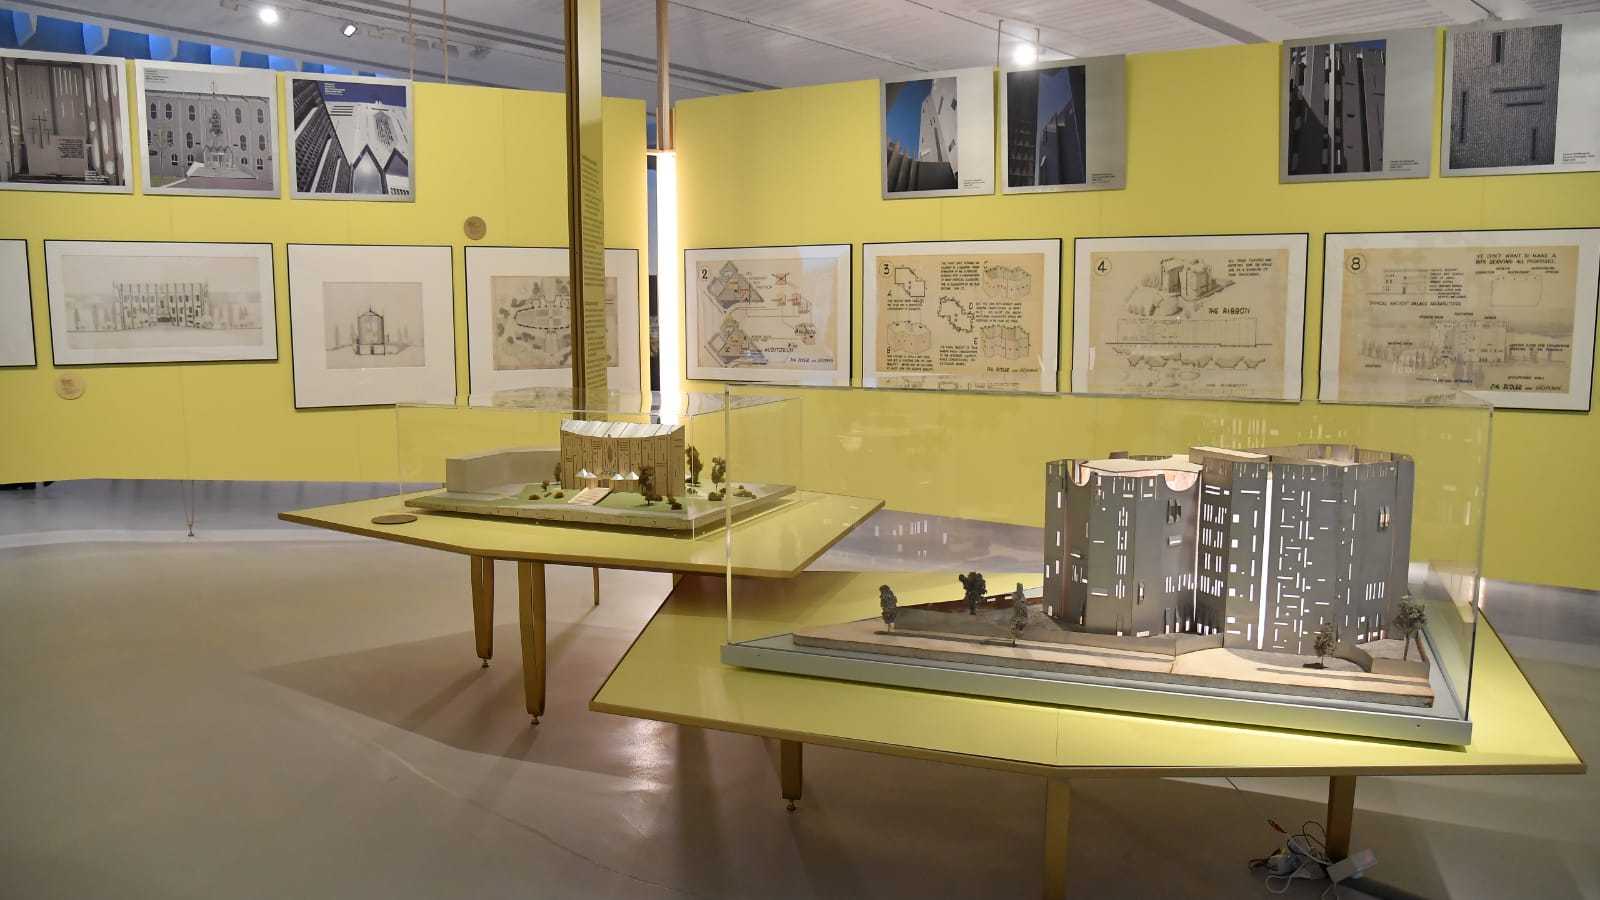 Gio Ponti: Amare l’architettura, Exhibition, MAXXI, Rome: 27 November 2019-13 March 20202020